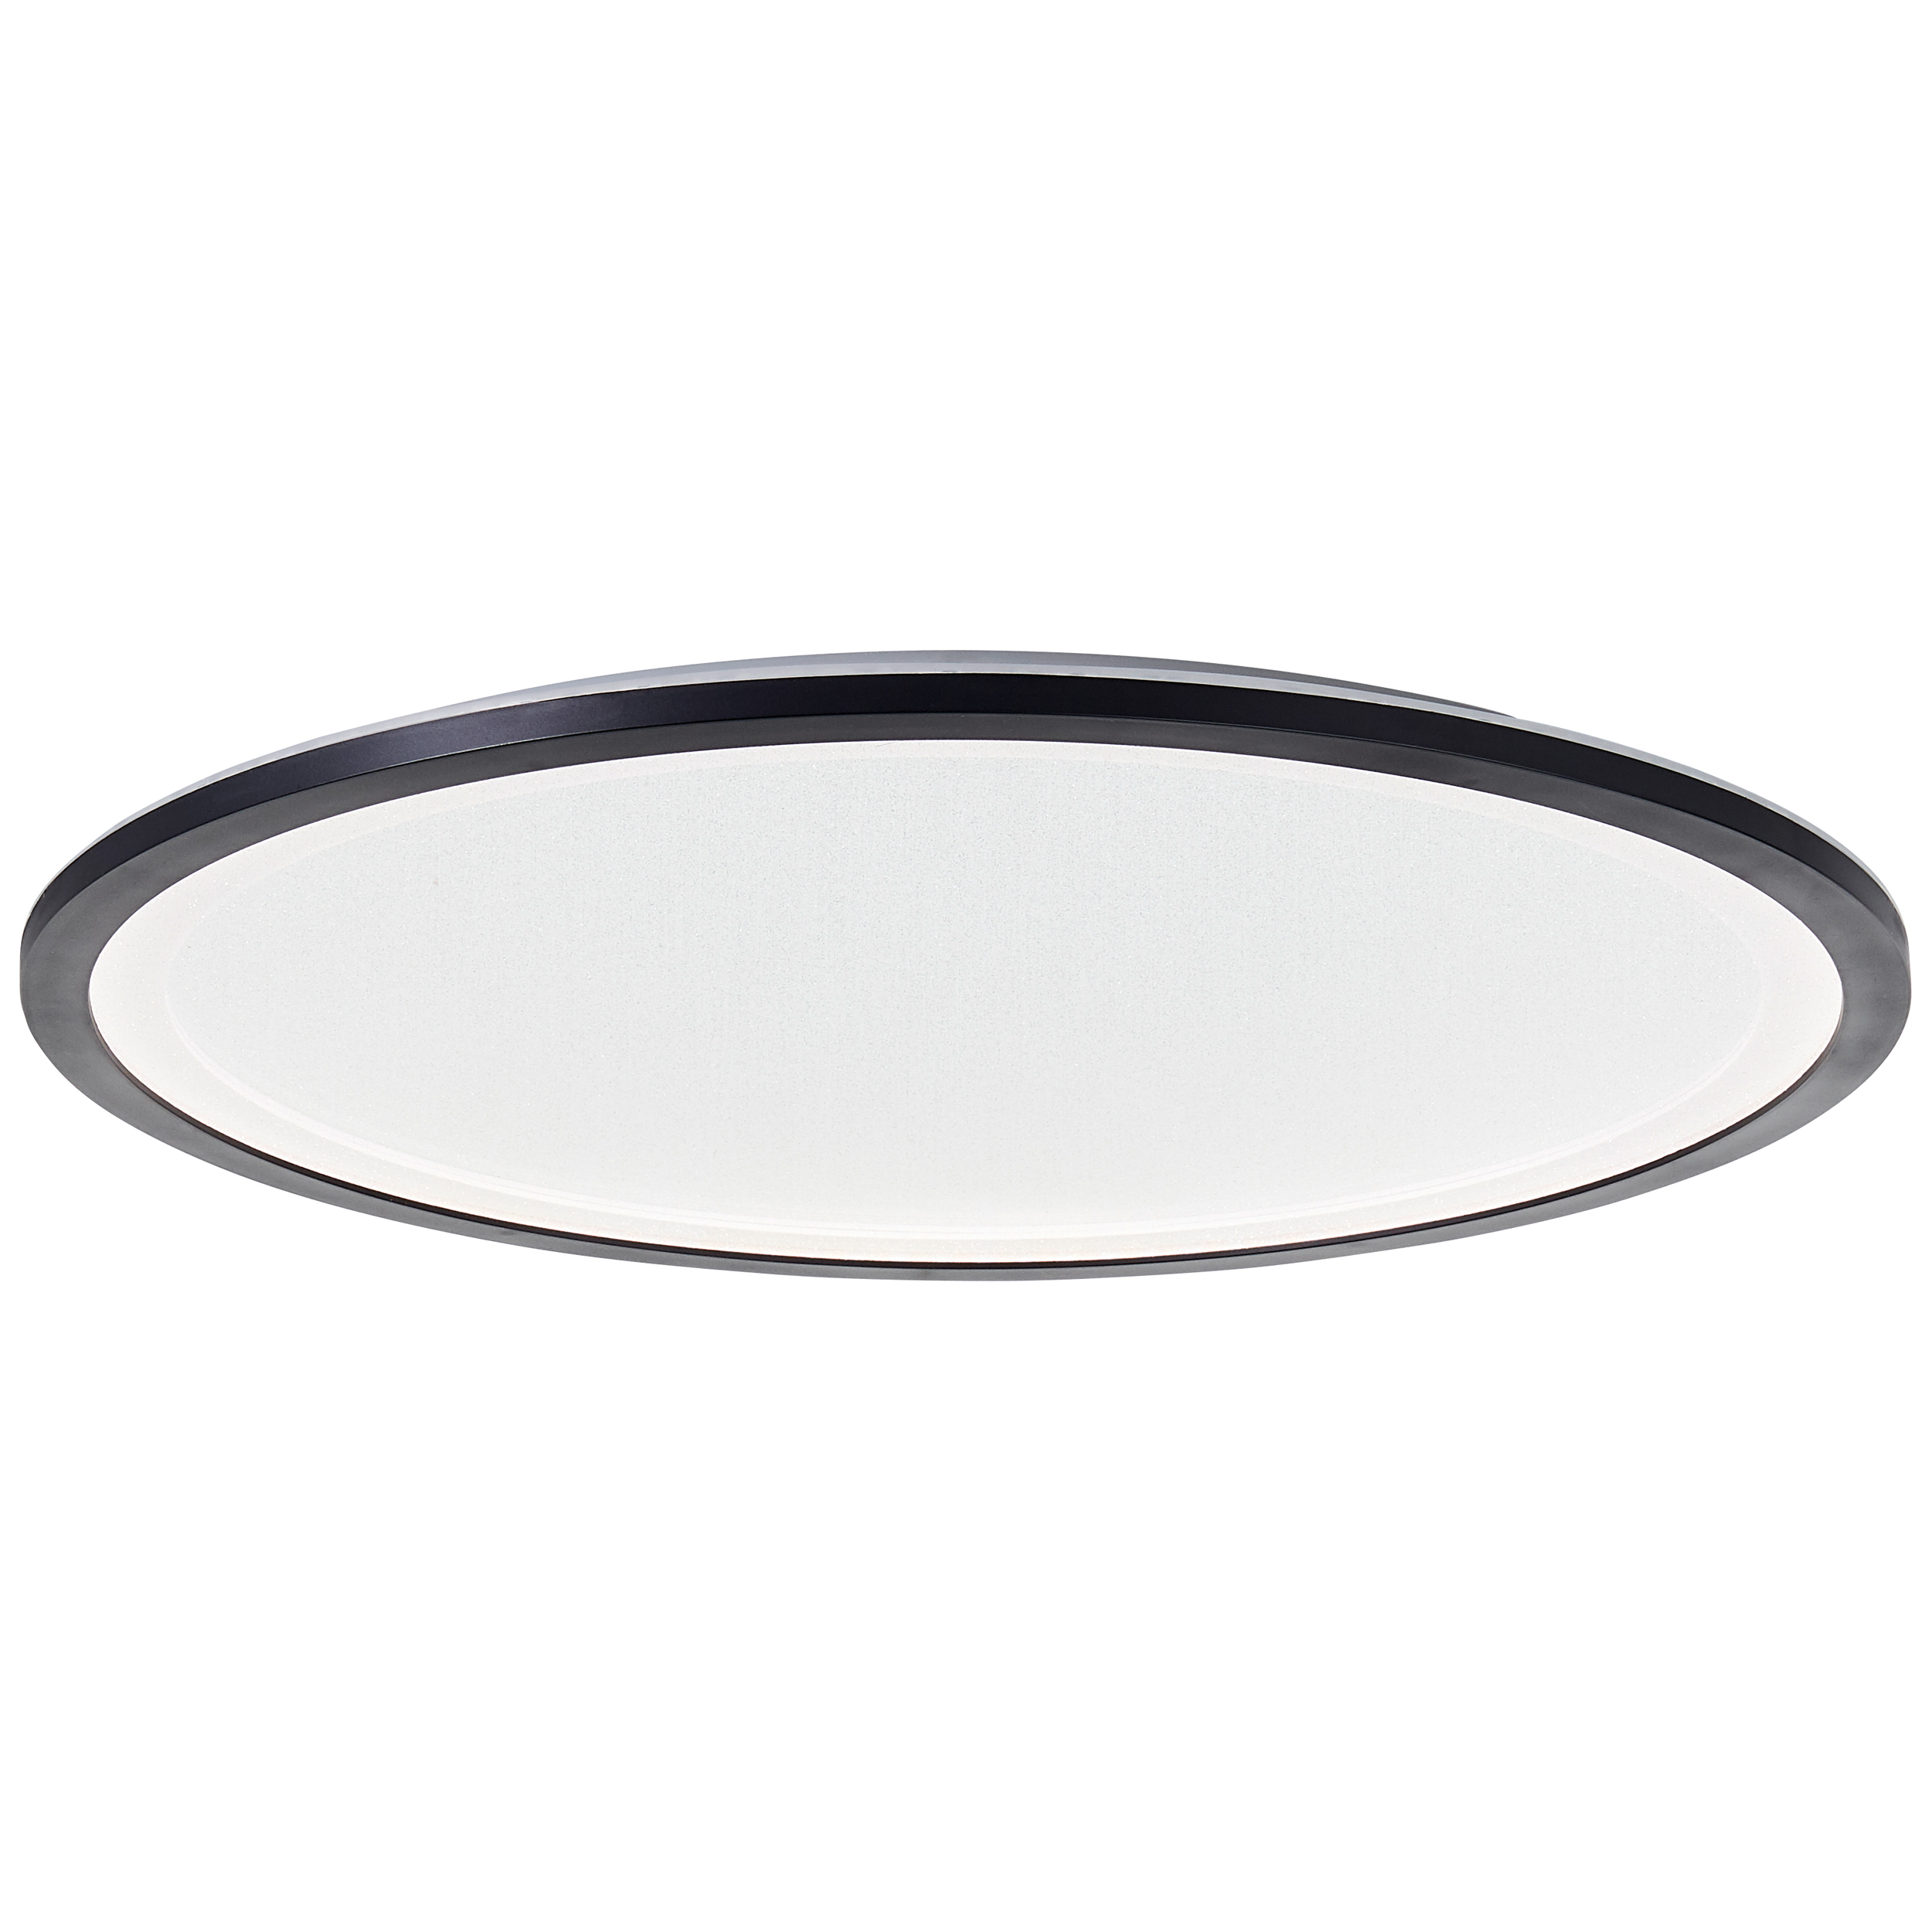 Mosako LED Deckenaufbau-Paneel 50cm schwarz/weiß | G80553/76